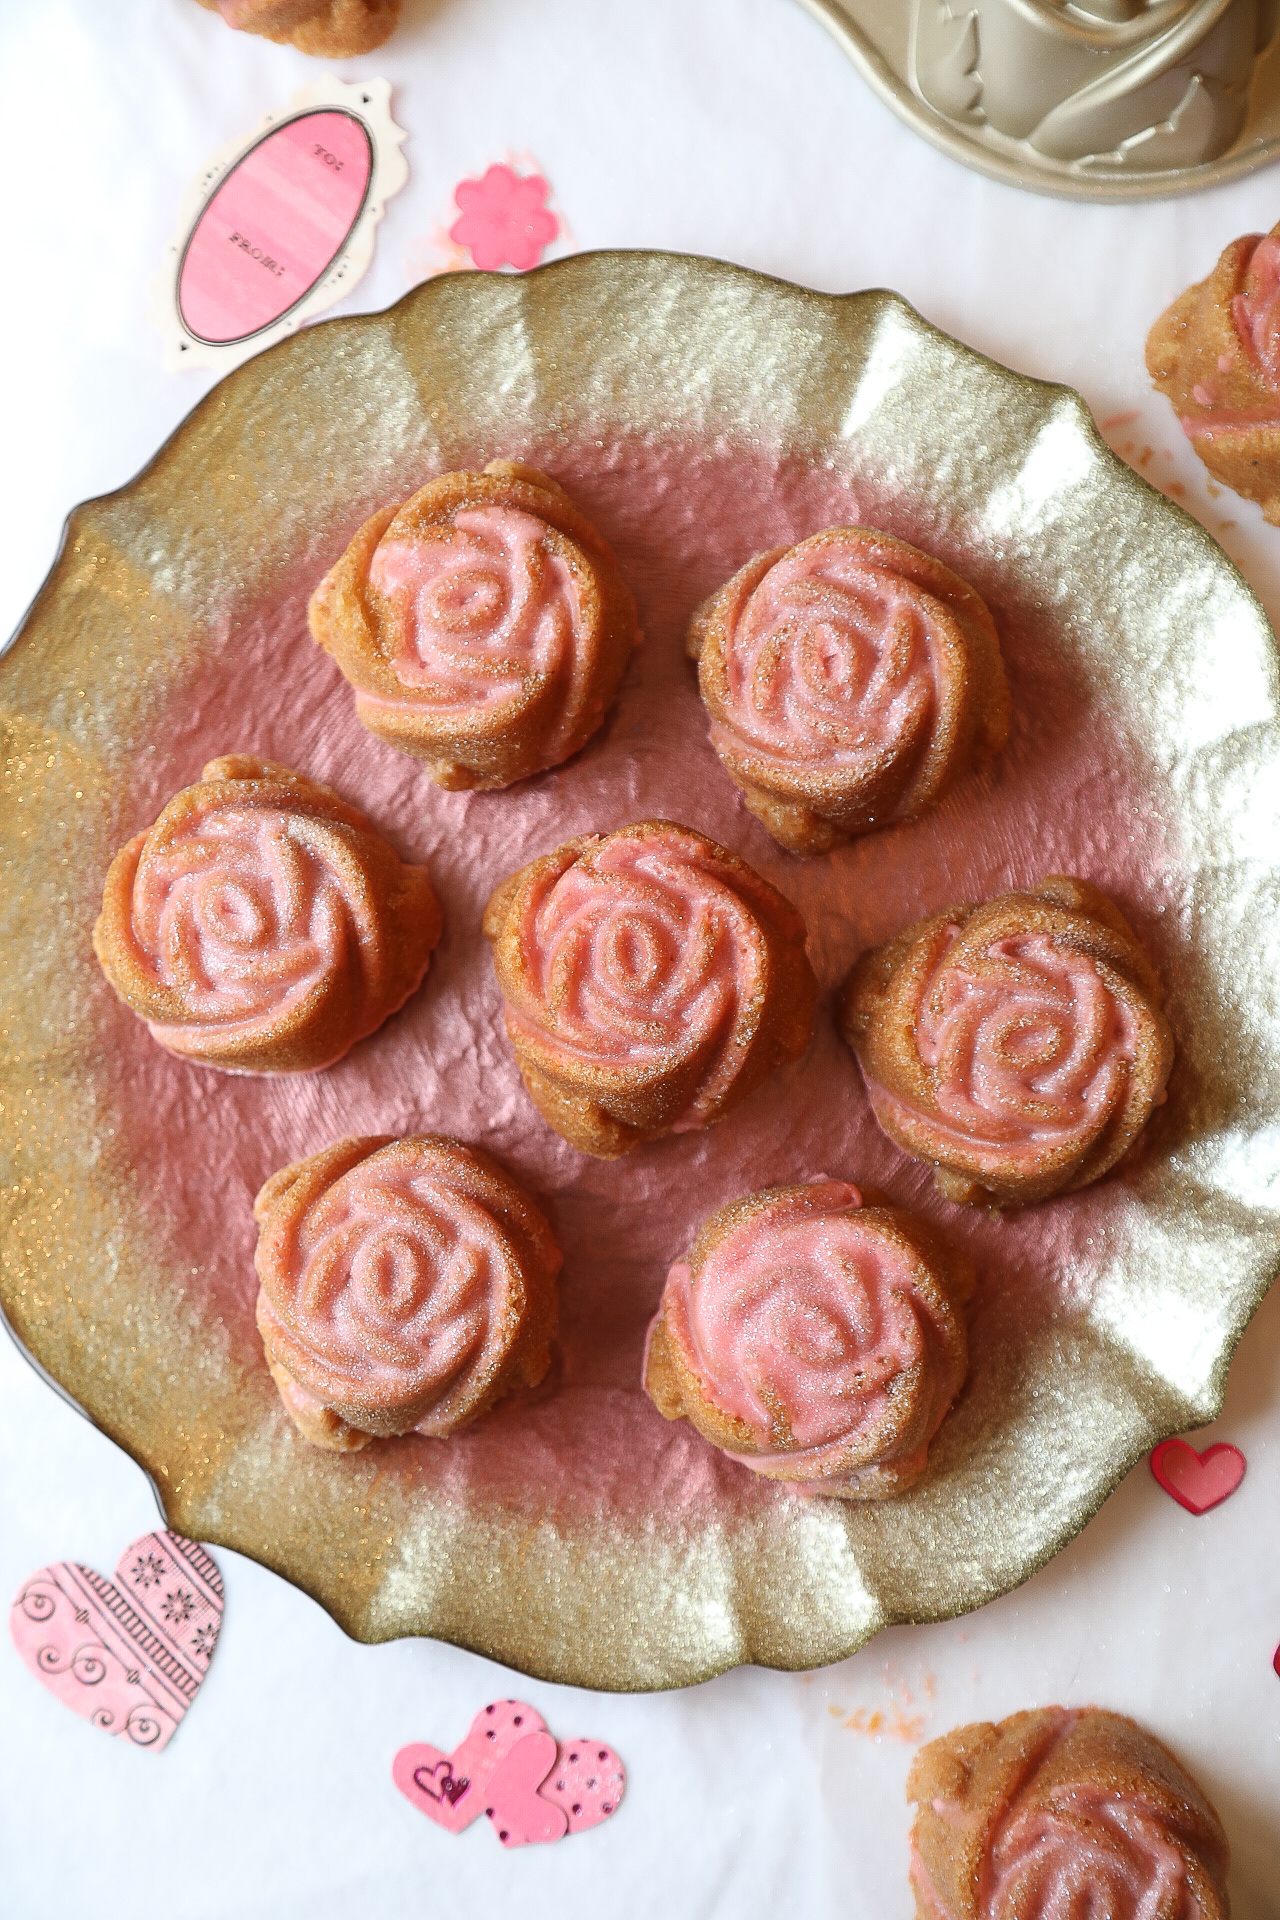 Rose Bundt Cakes with Cara Cara Icing